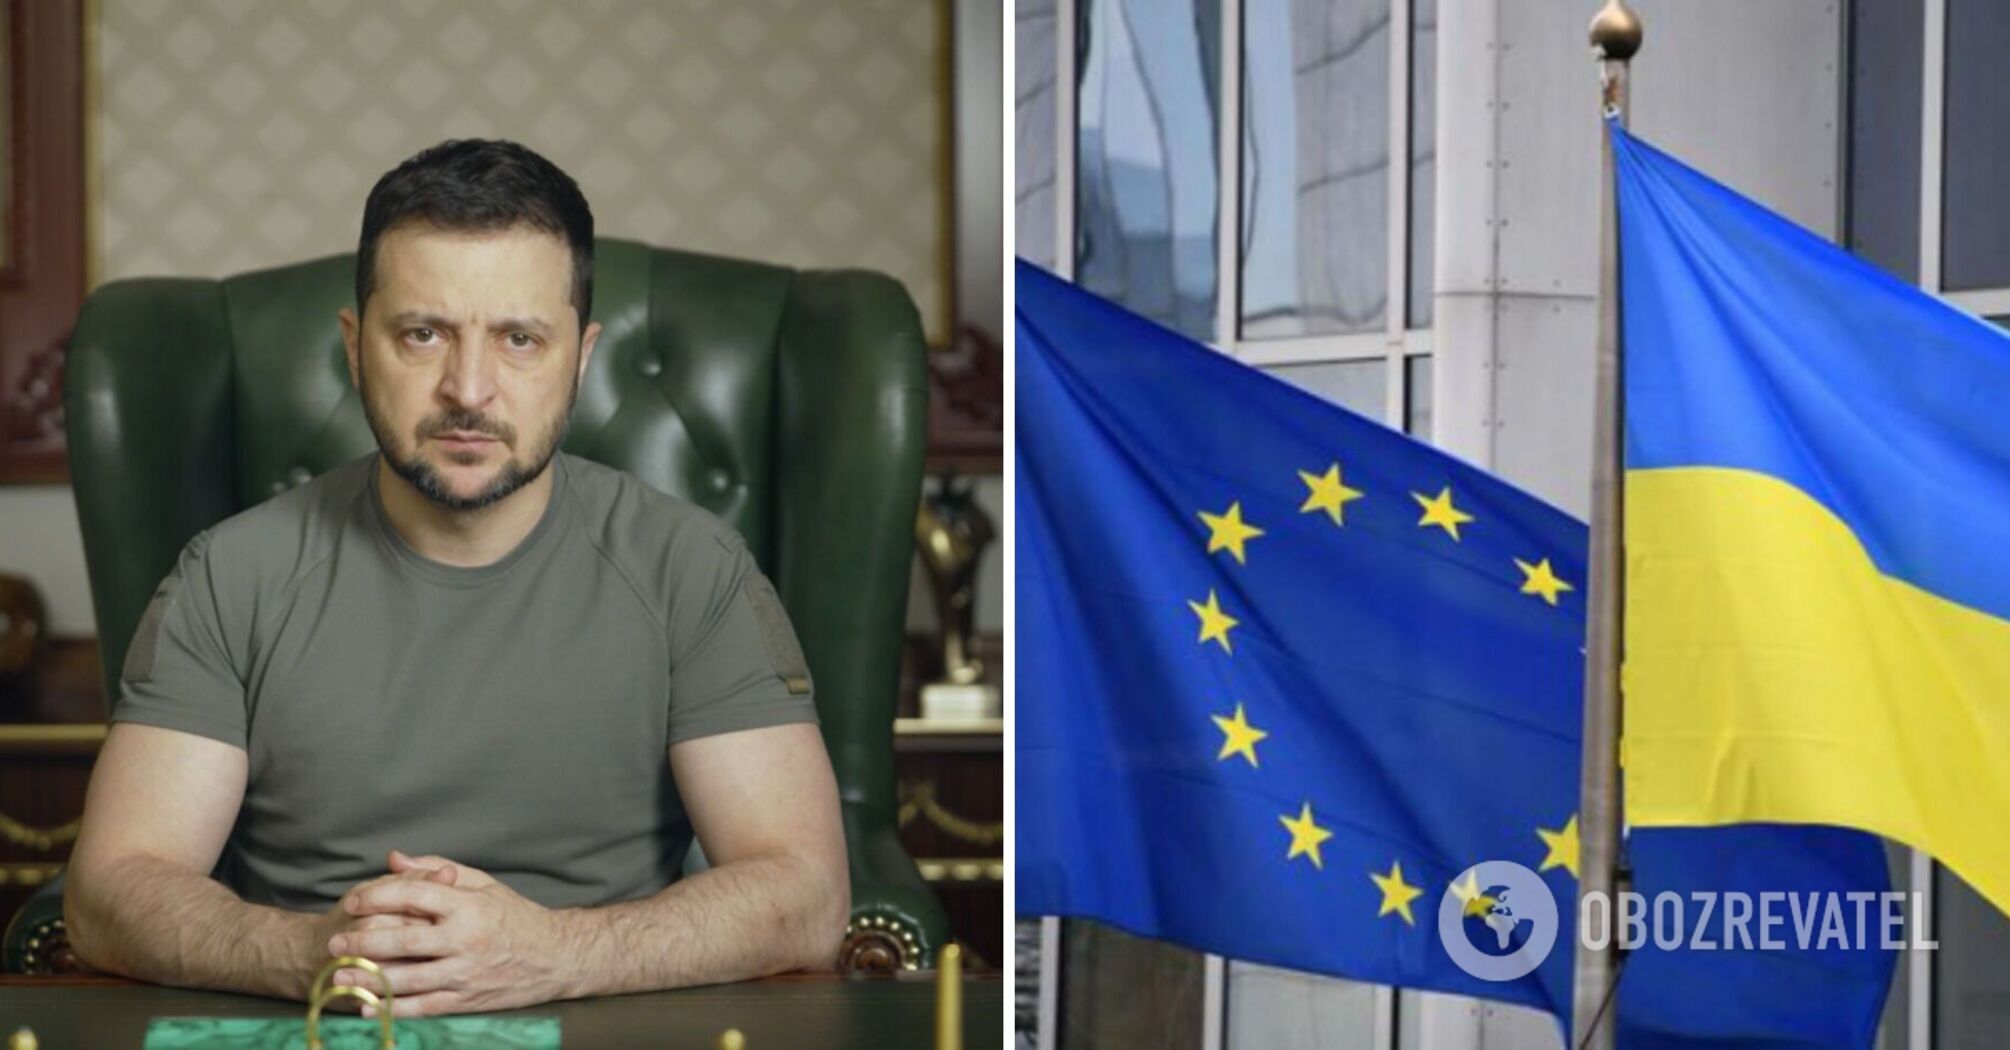 UE oficjalnie rozpoczęła proces przeglądu ukraińskiego ustawodawstwa - Zełenski